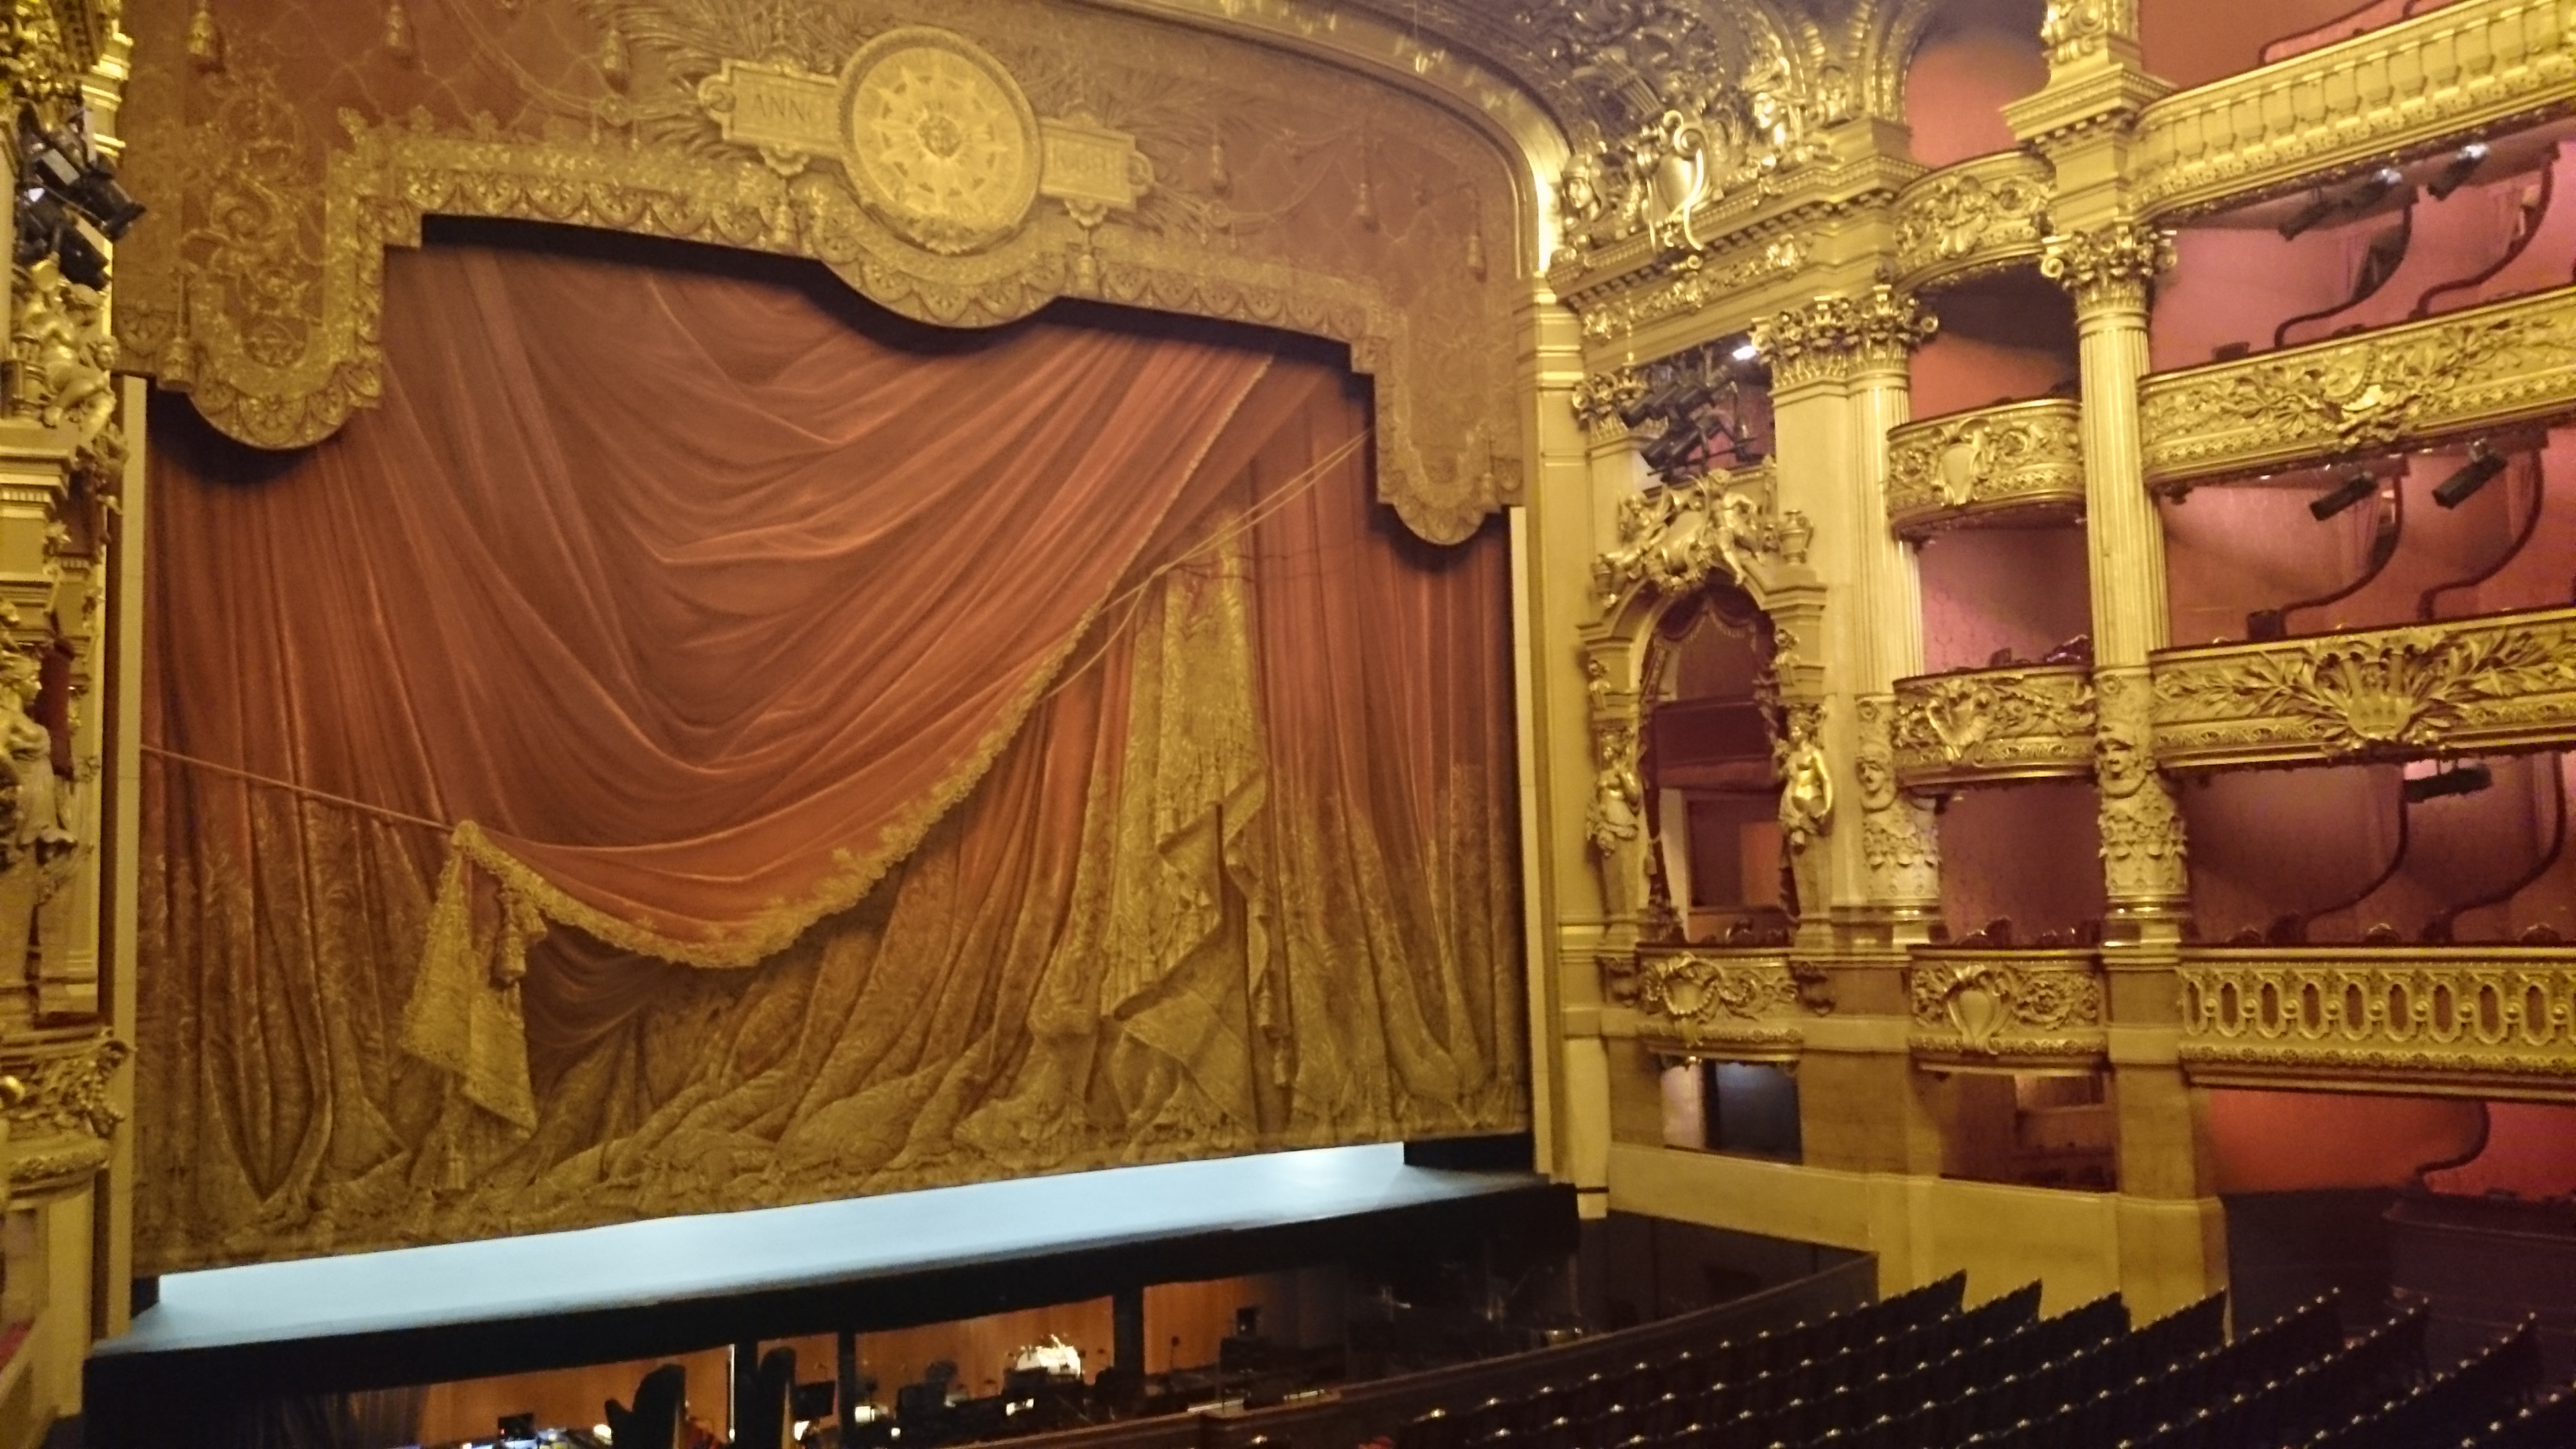 dsc 1021 - Una visita a la Opera de Paris (Palais Garnier)